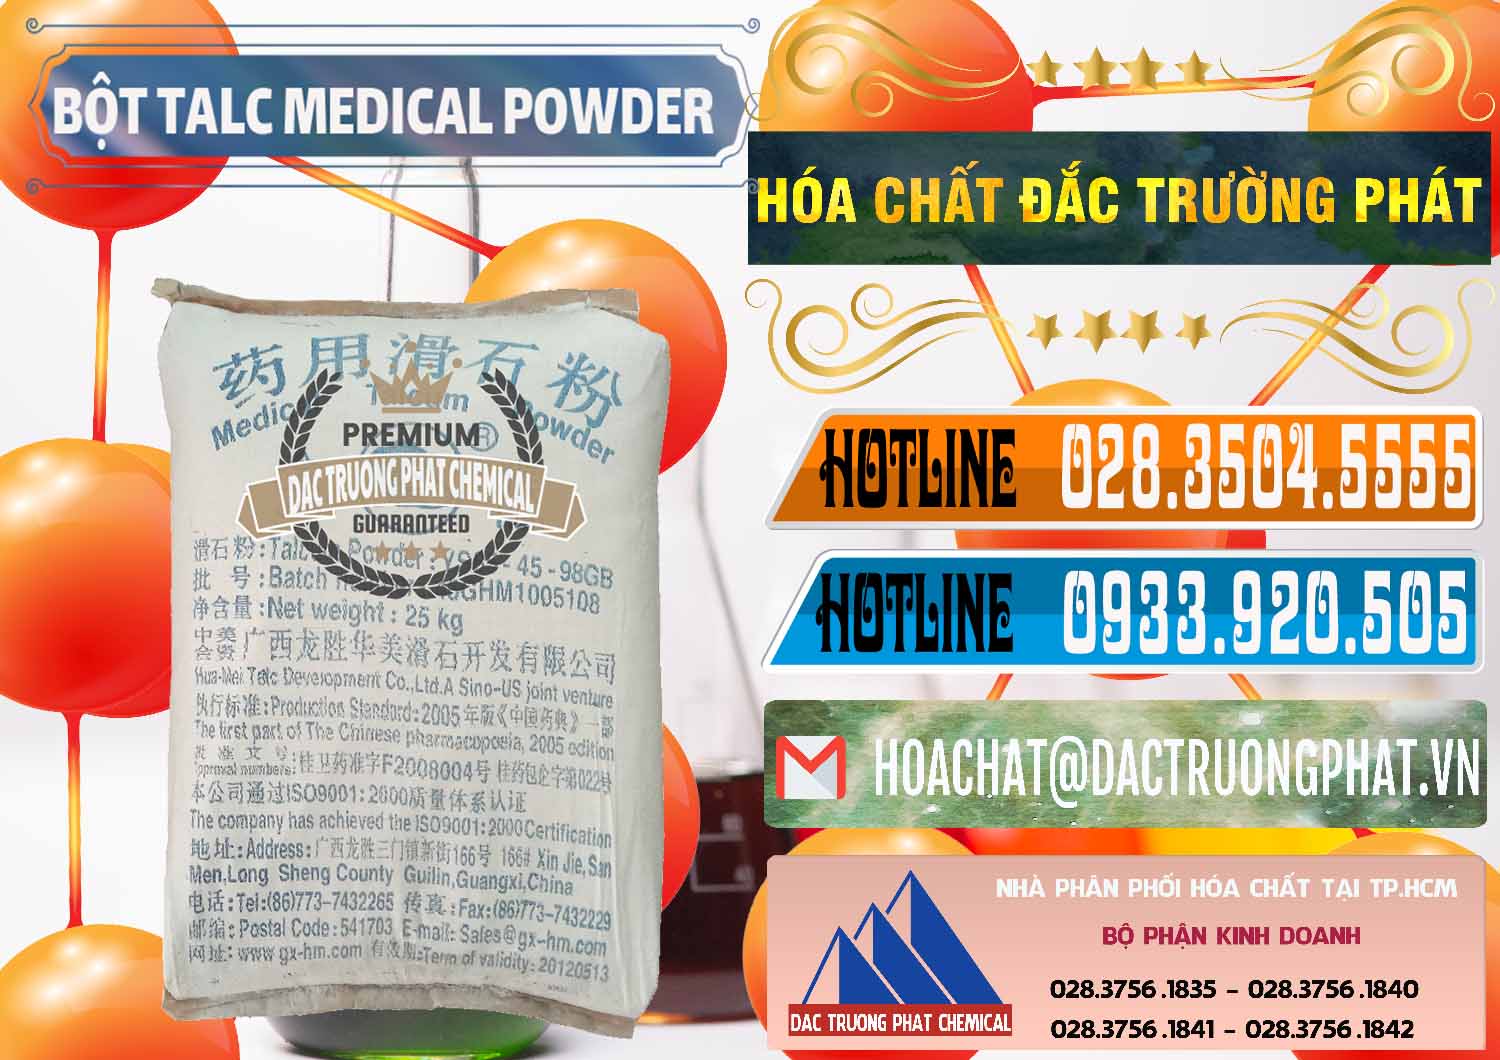 Bán và phân phối Bột Talc Medical Powder Trung Quốc China - 0036 - Cty bán _ phân phối hóa chất tại TP.HCM - stmp.net